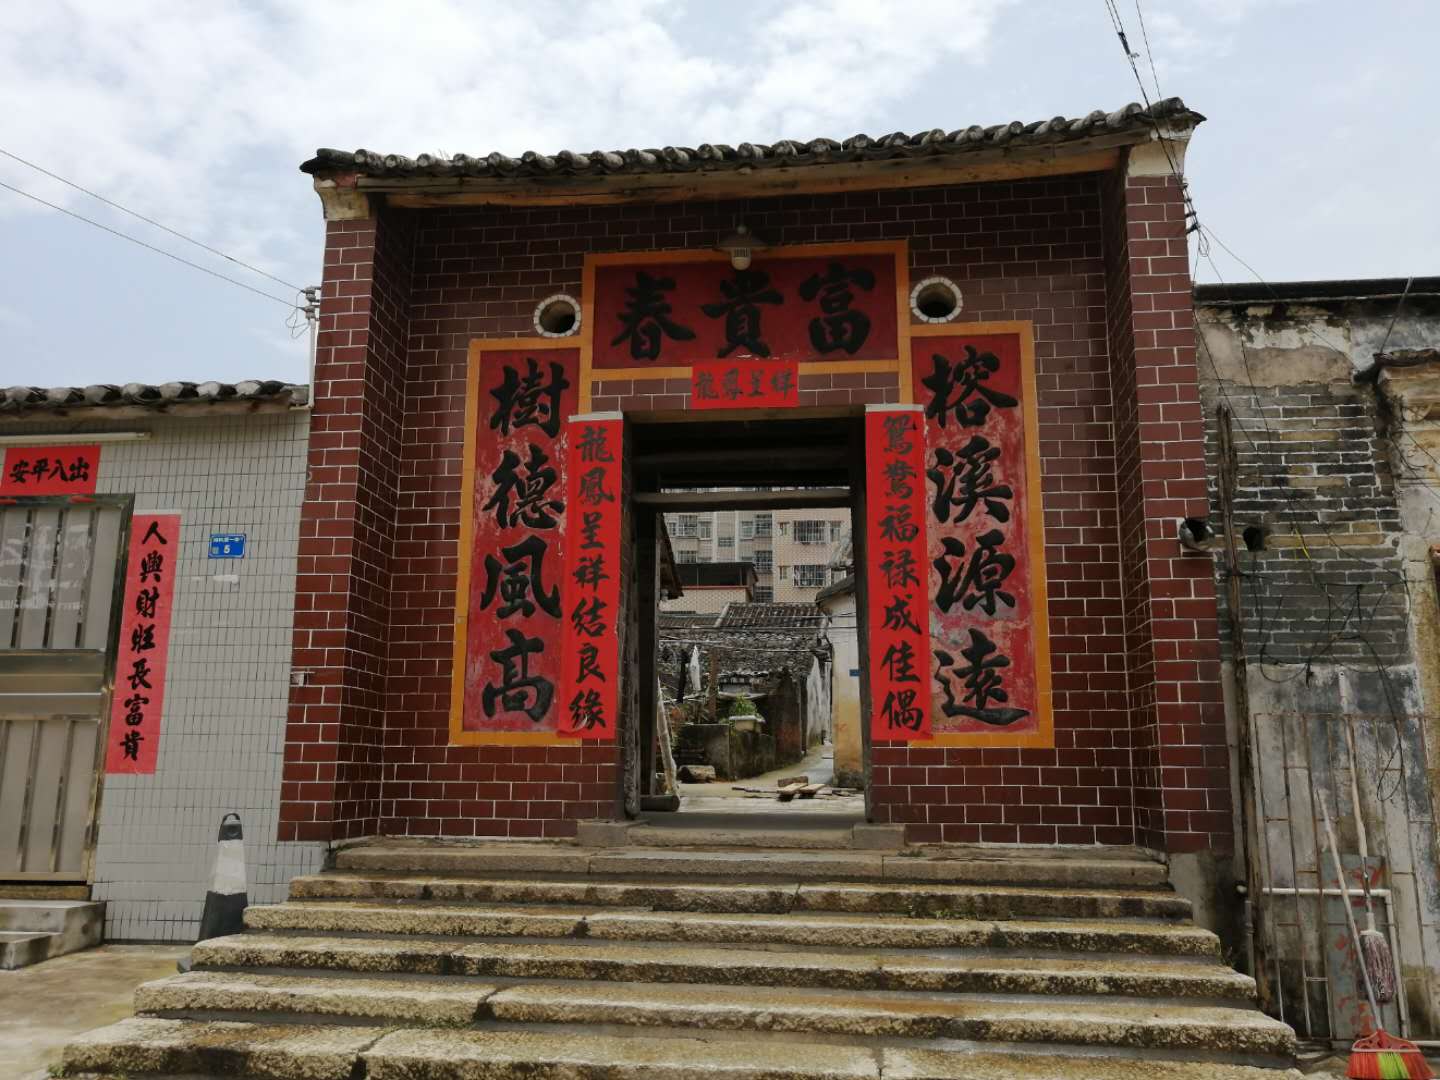 弘扬中国文化凤岗镇黄洞村是客侨文化最为集中和丰富的一个村